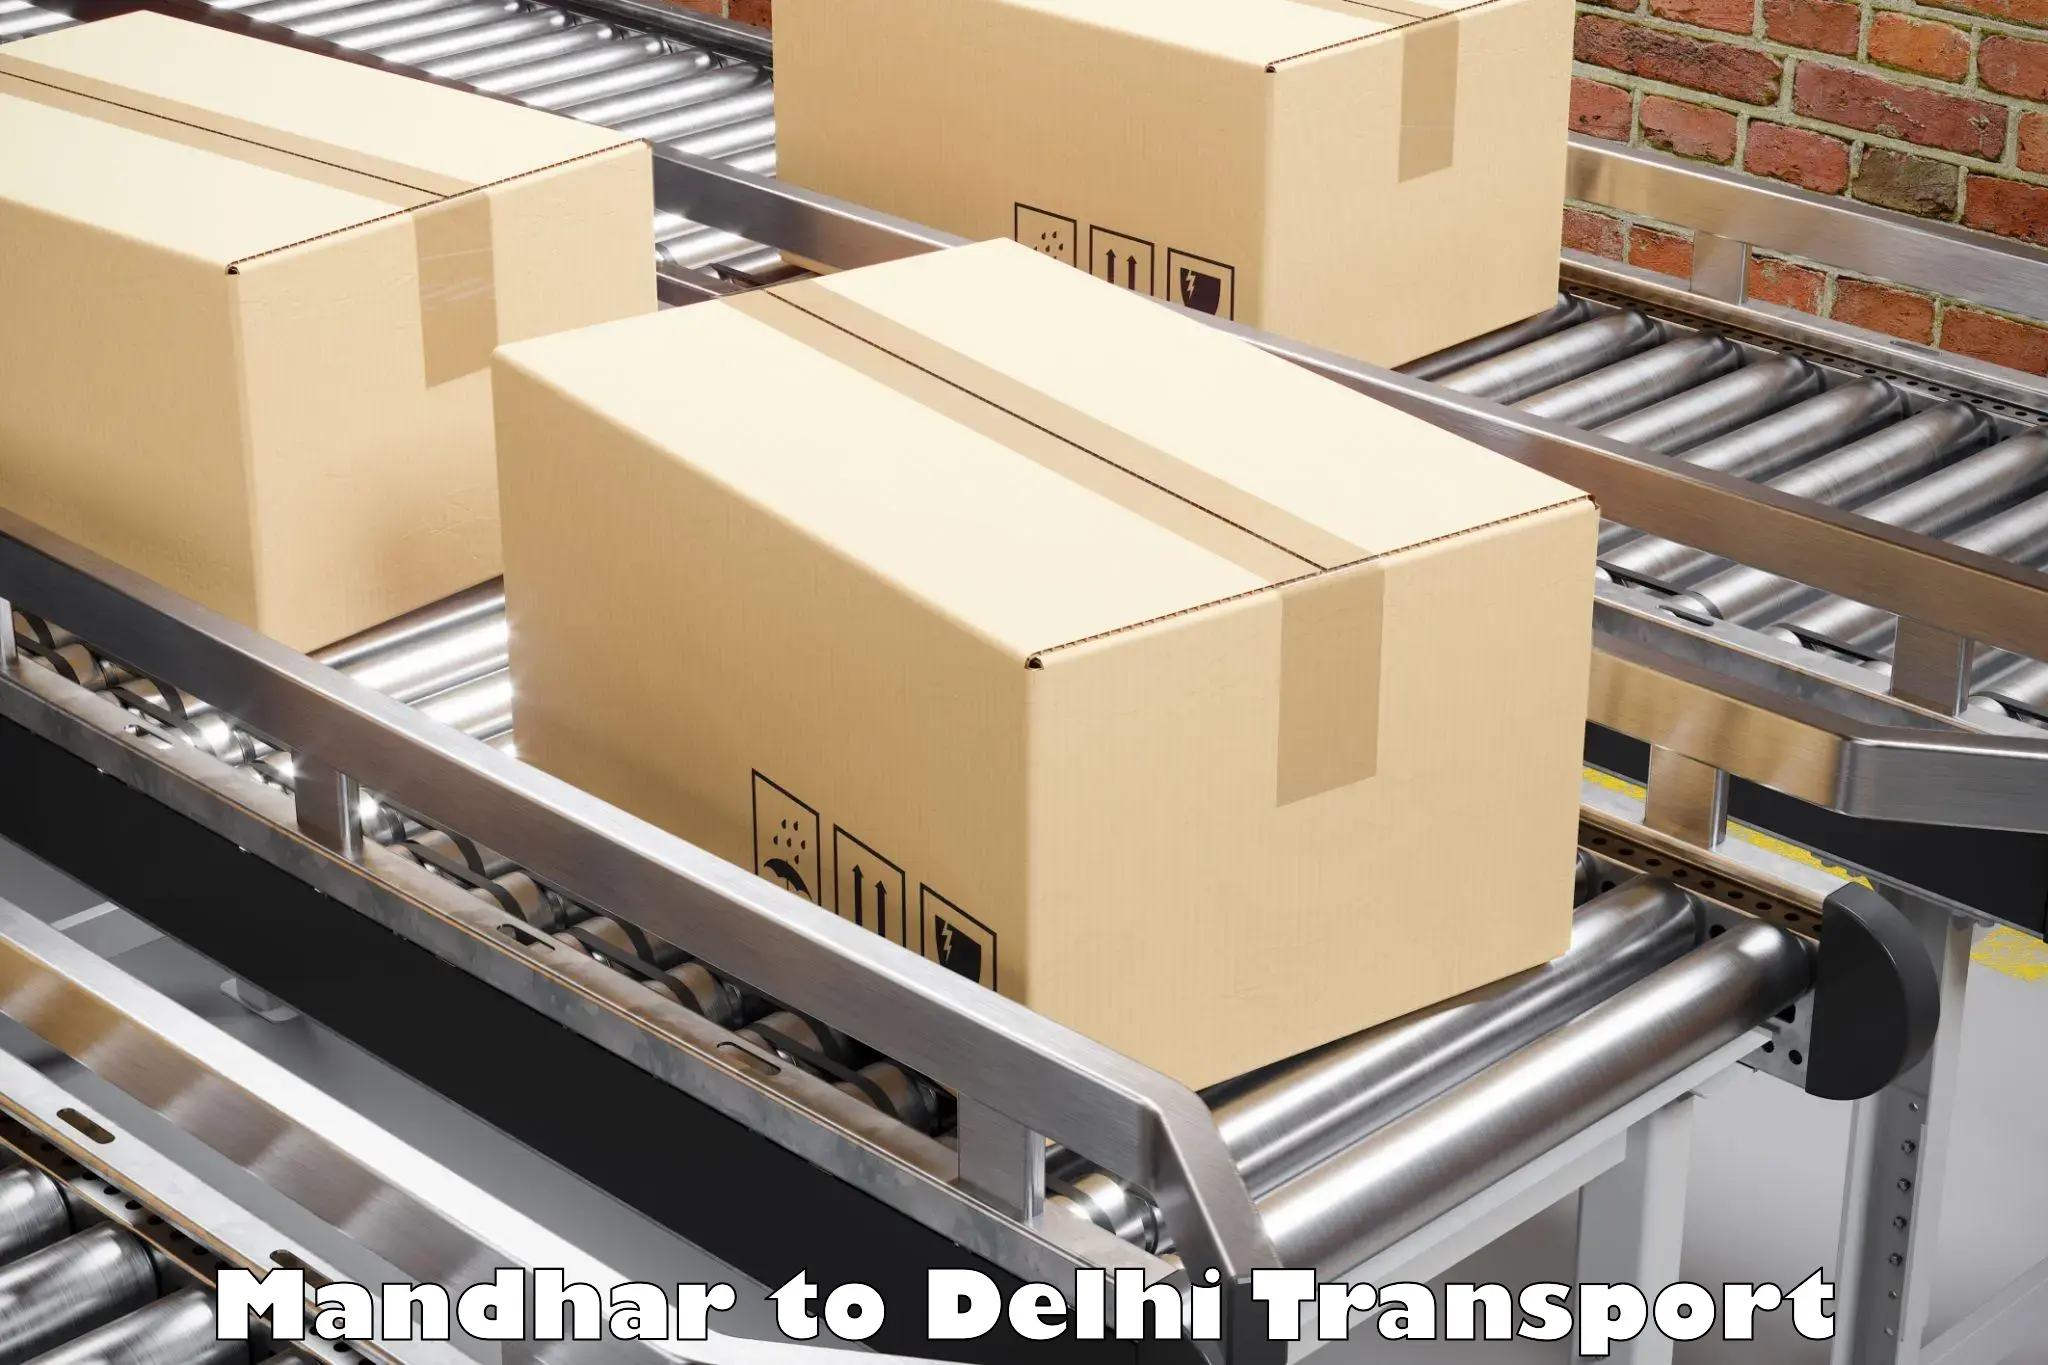 Commercial transport service Mandhar to Delhi Technological University DTU